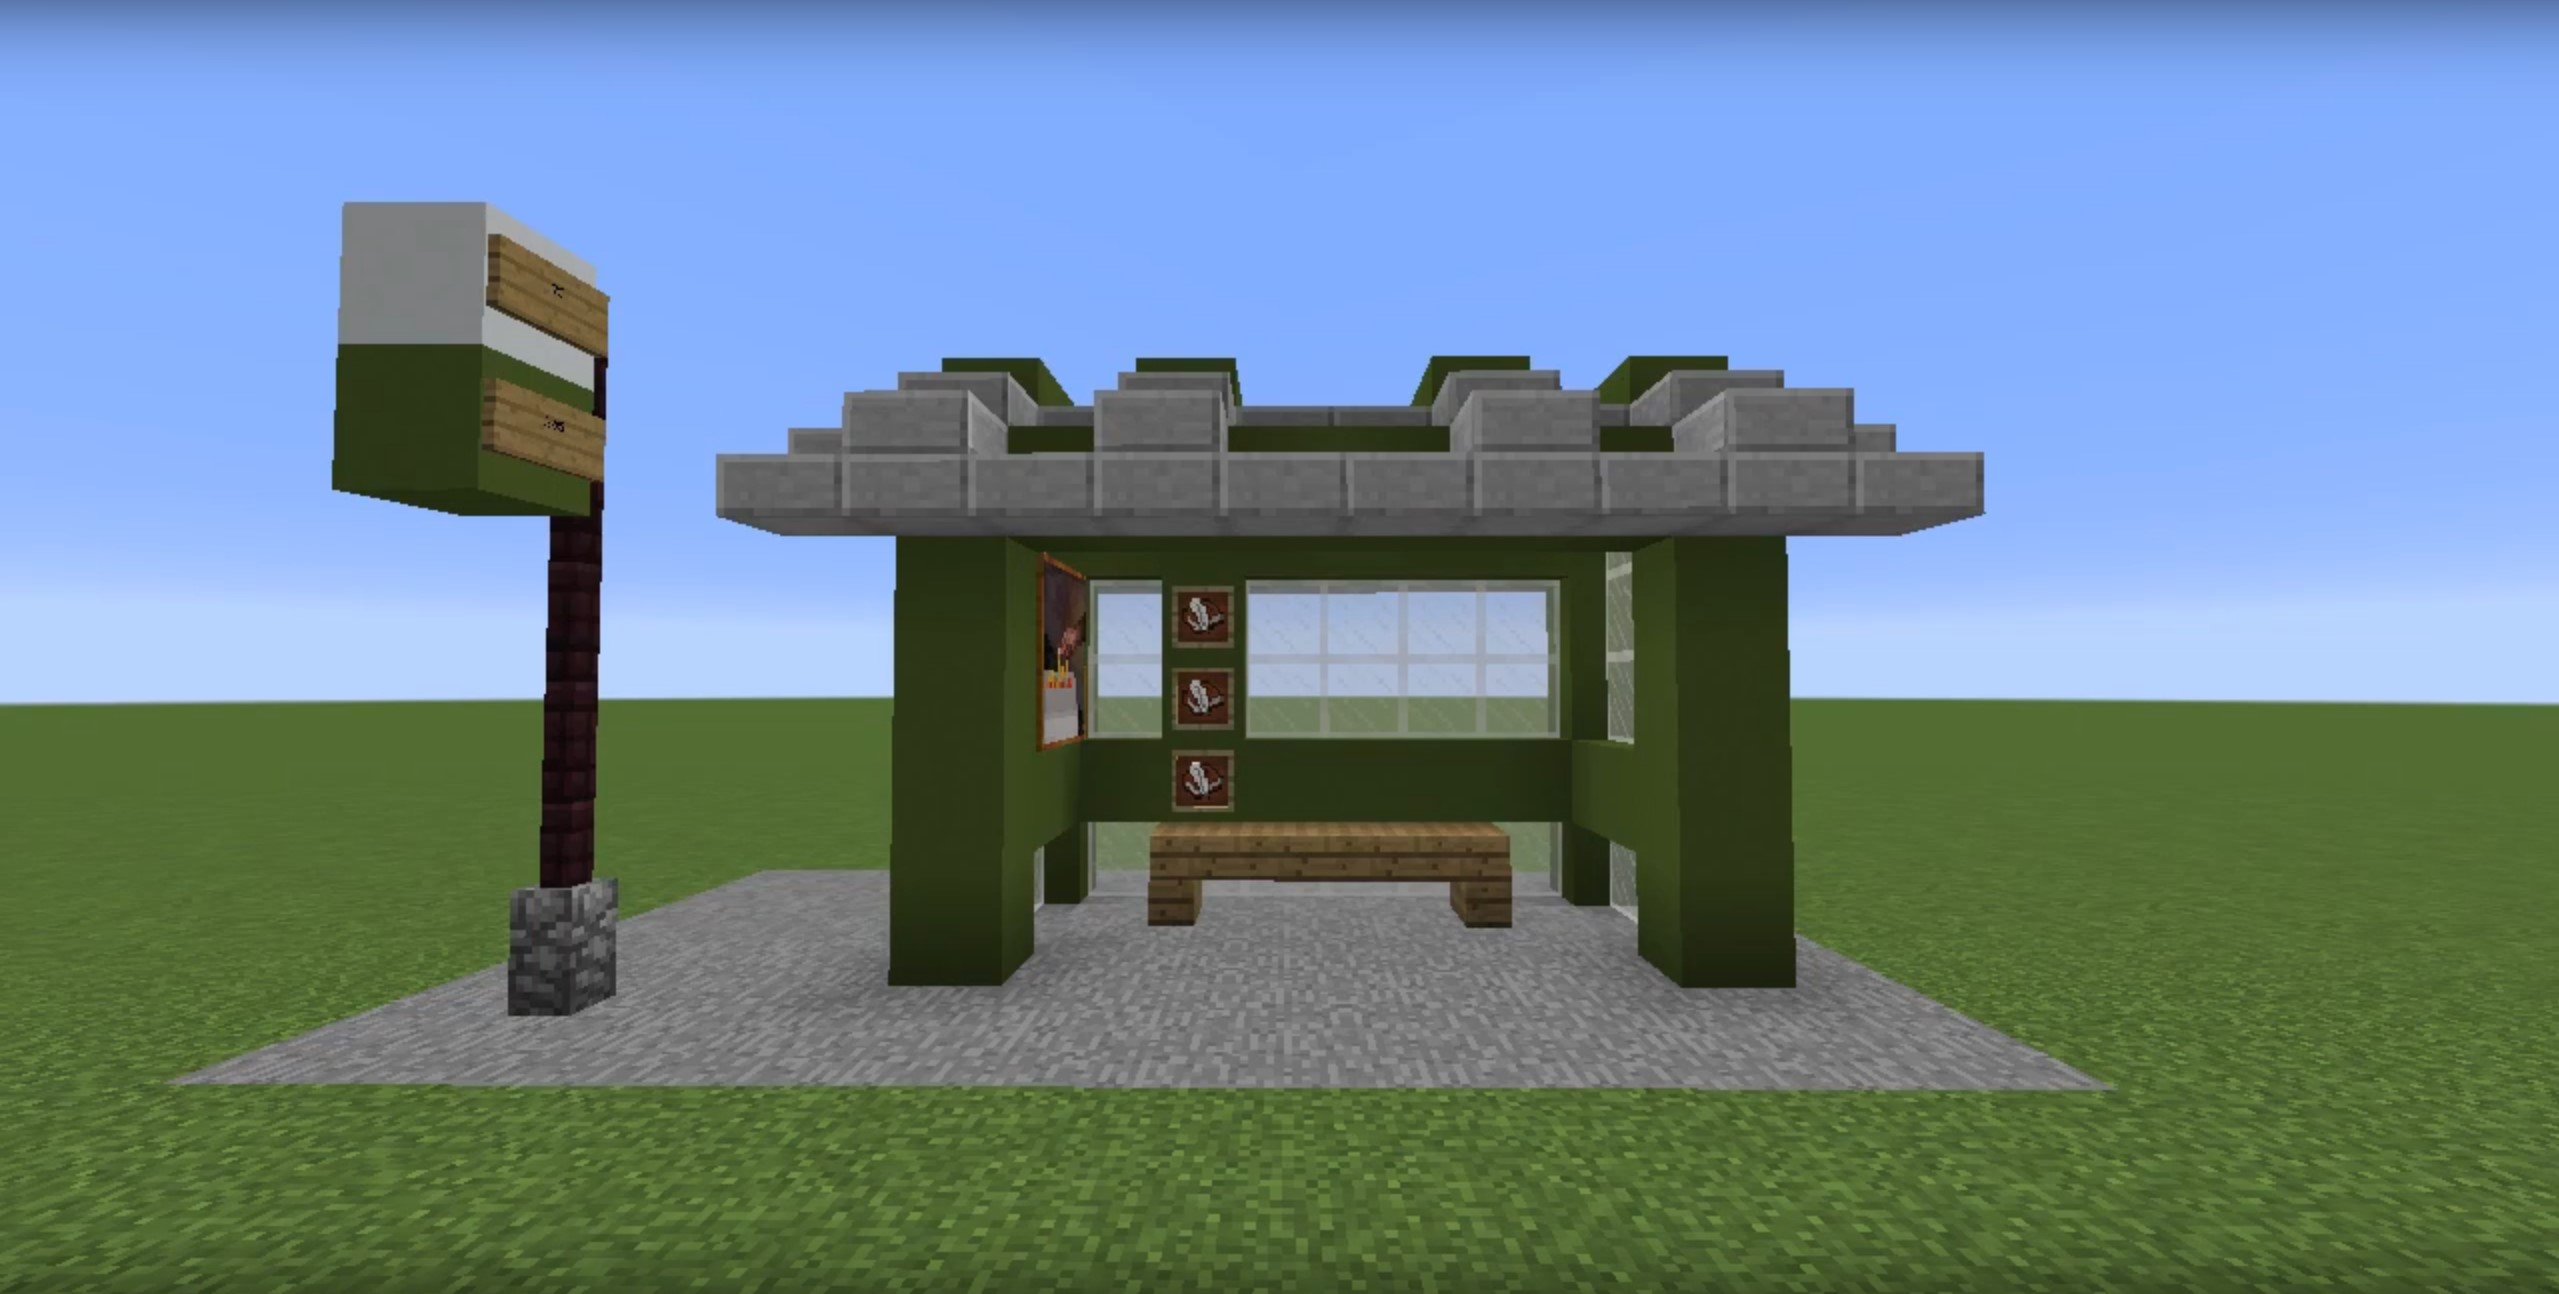 Bus Stop minecraft building idea